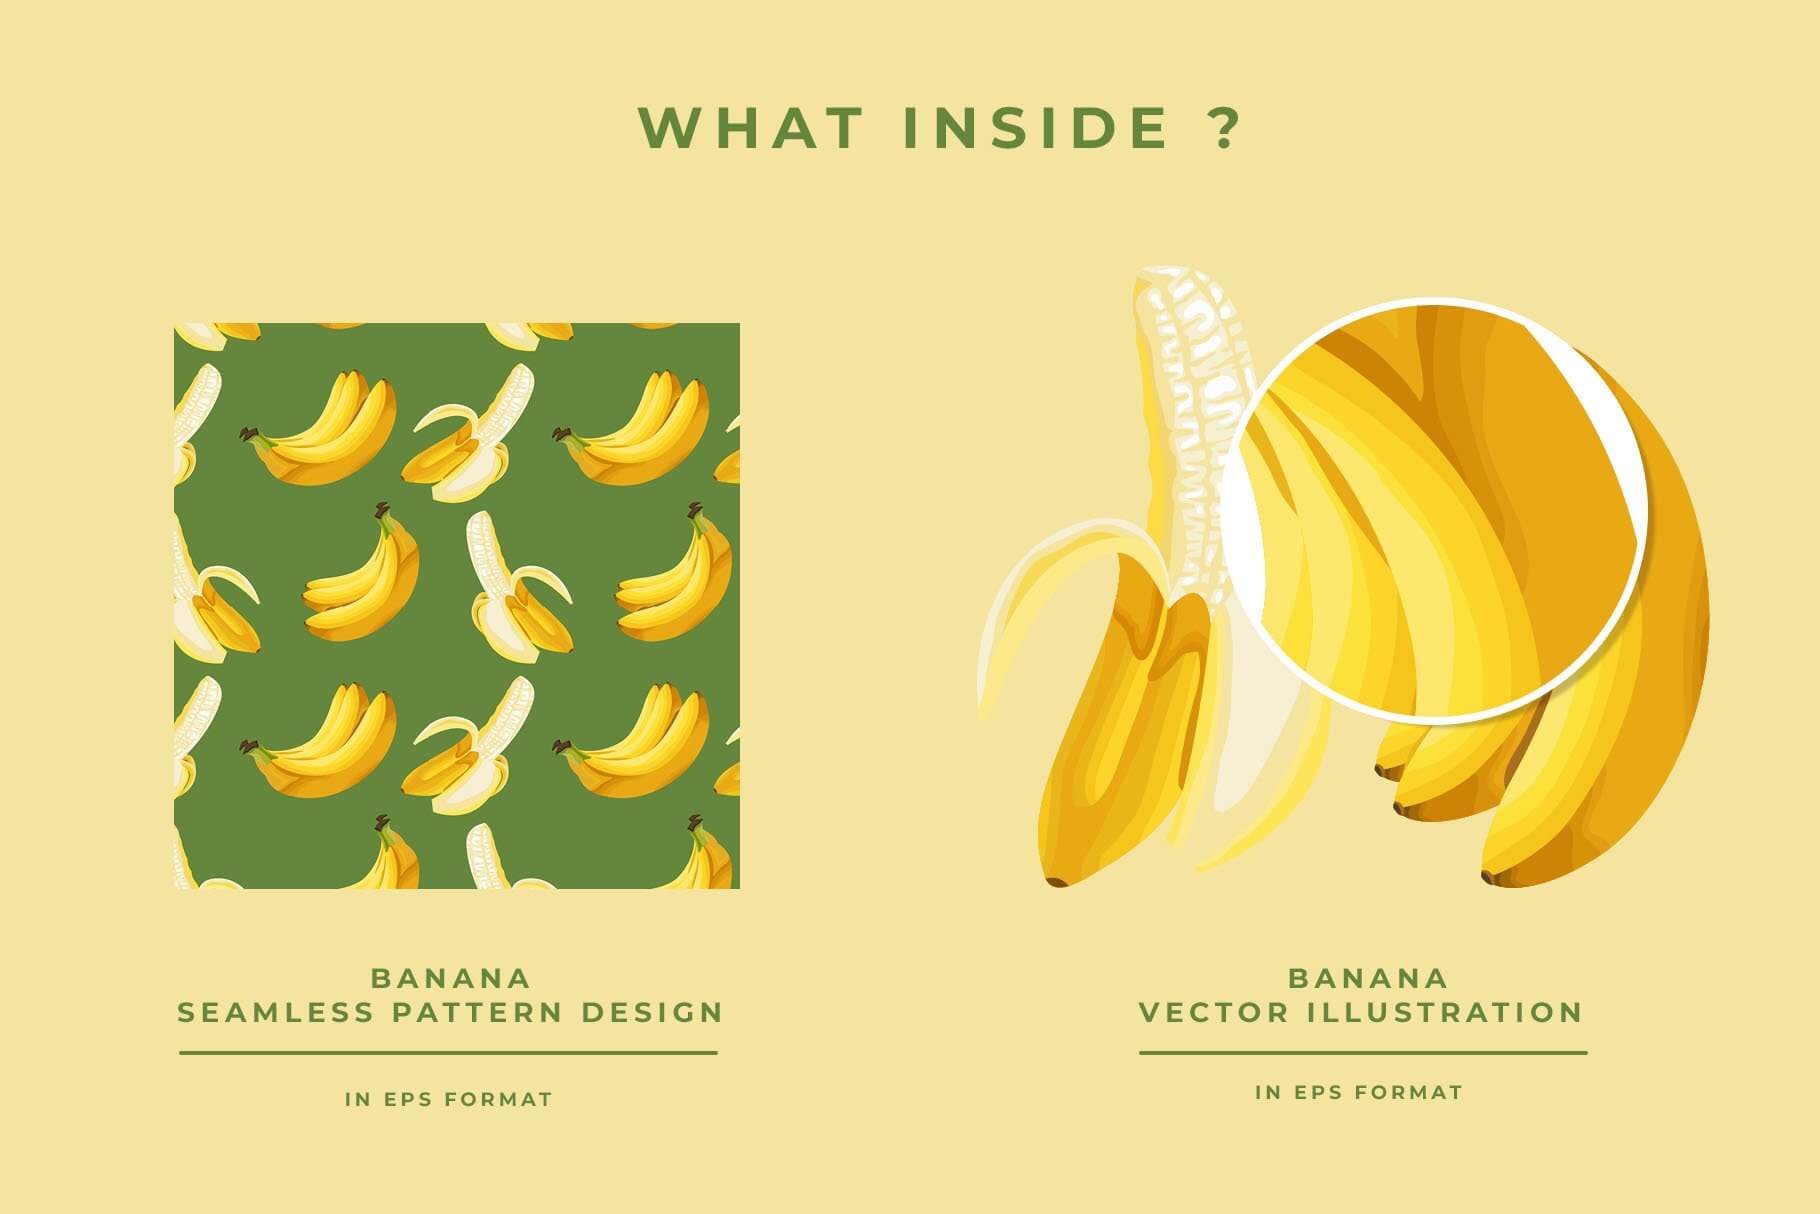 Banana vector illustration in EPS format.